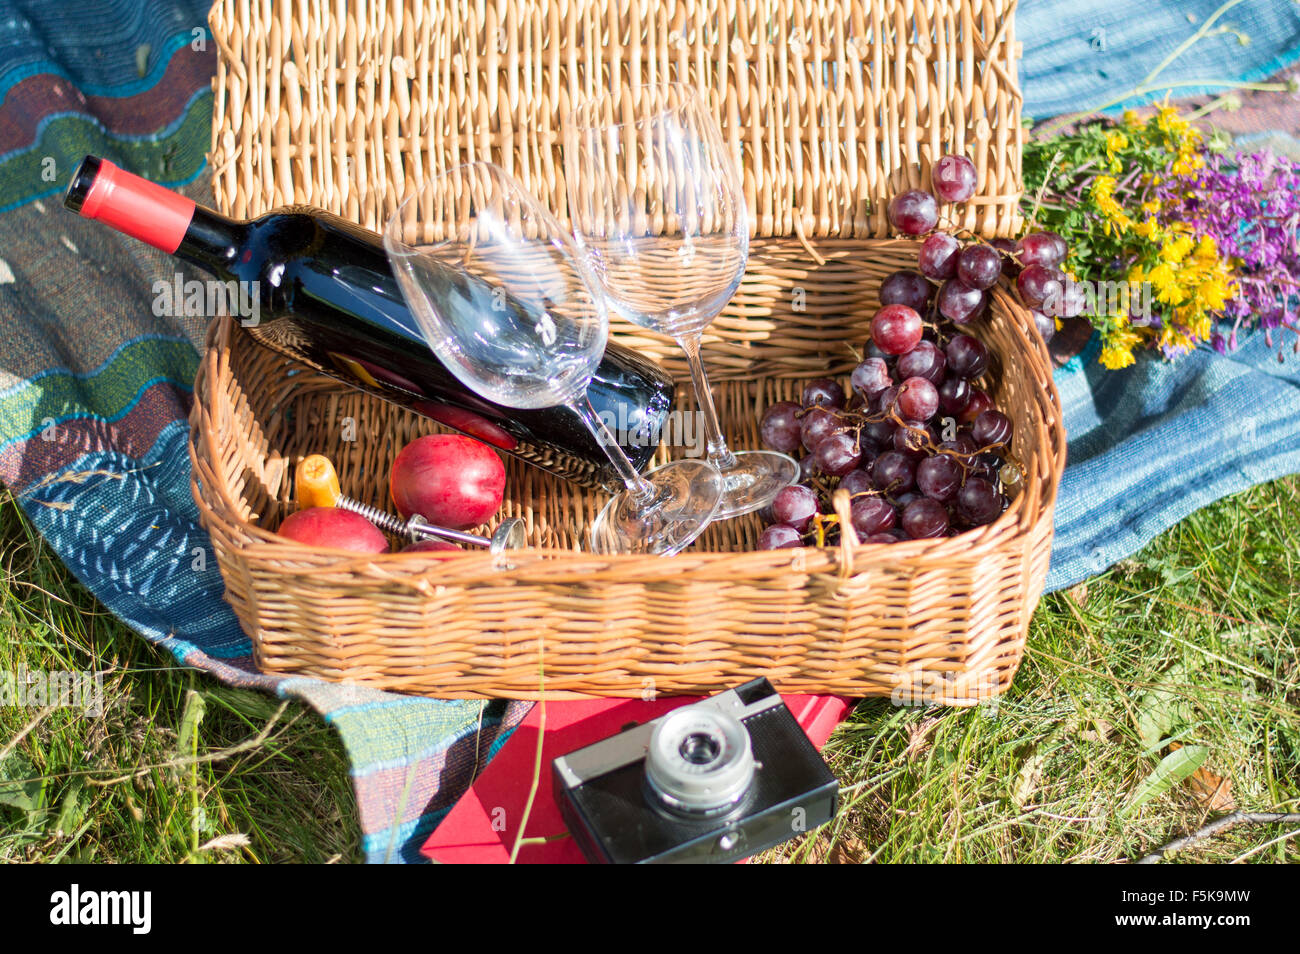 Picknick-Ausrüstung in einem Weidenkorb auf einem Blaknket im freien Stockfoto